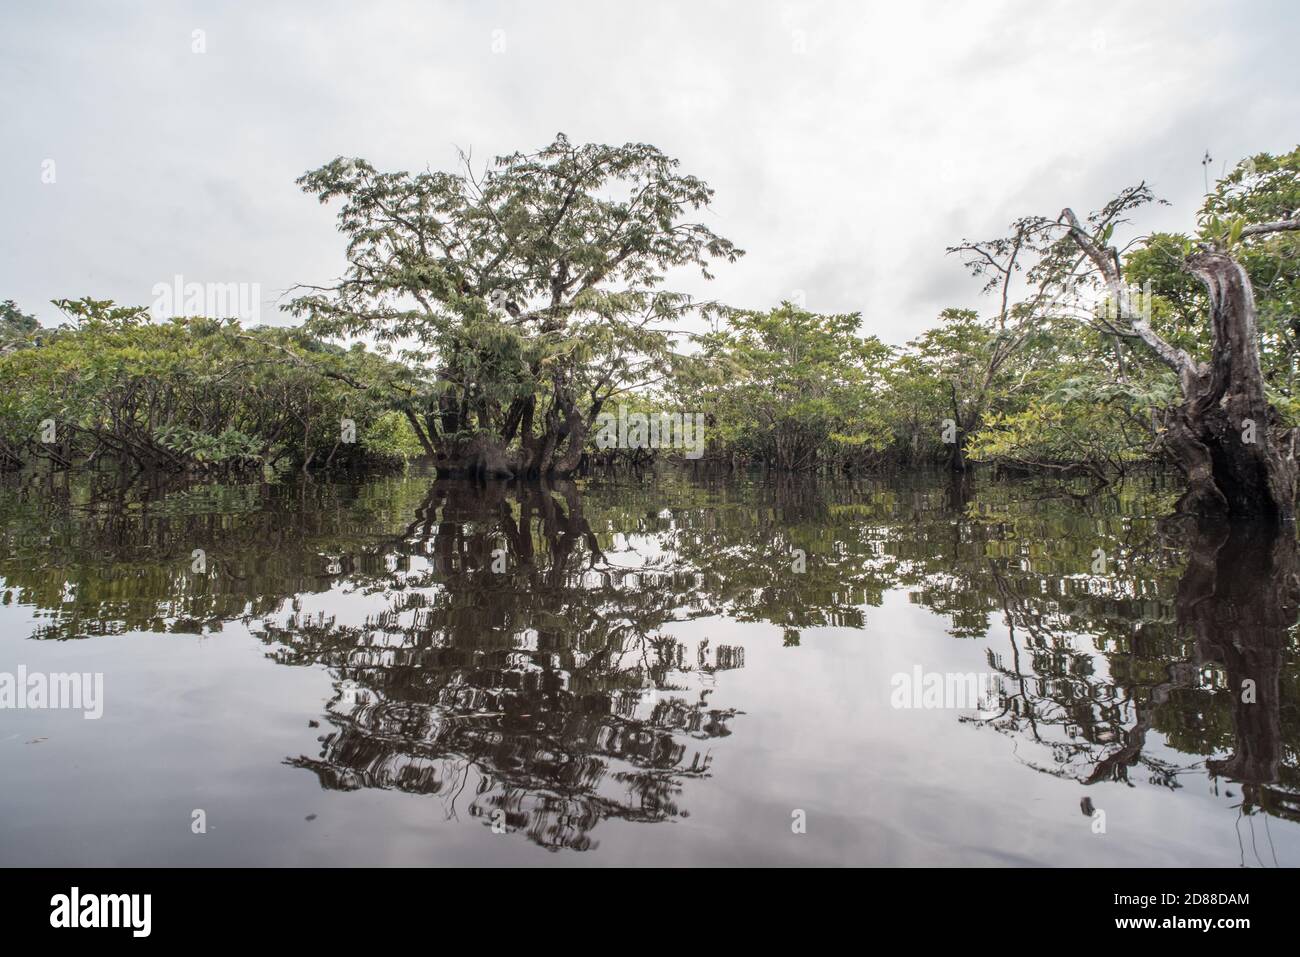 La forêt amazonienne inondée de la réserve naturelle de Cuyabeno en Équateur. Banque D'Images